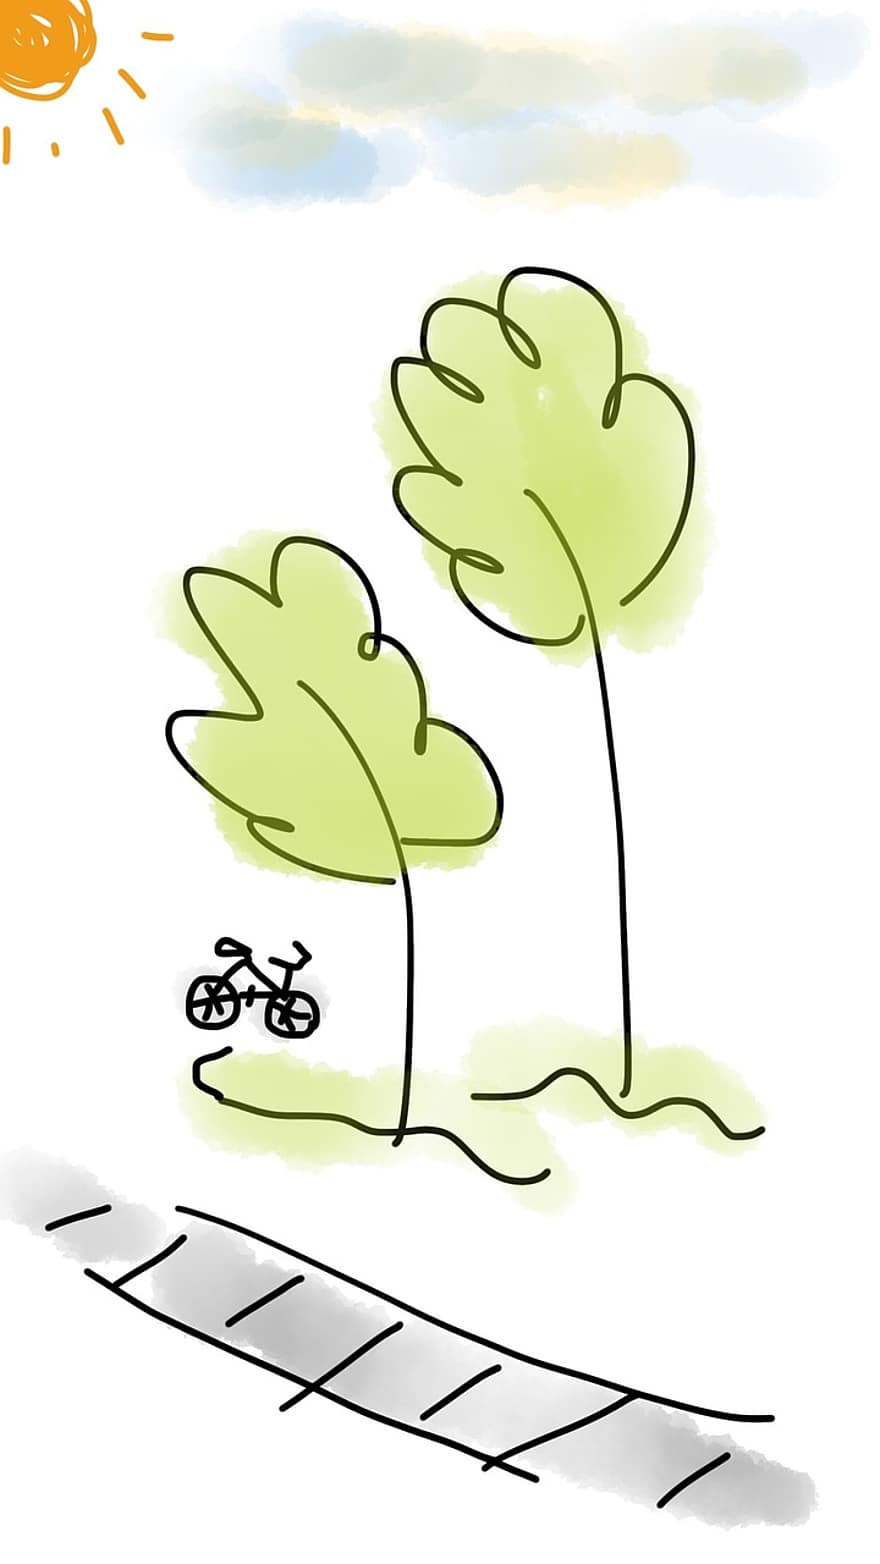 bicicletă, copac, în aer liber, verde, traseu, sportiv, drum, activitate, ciclism, soare, însorit